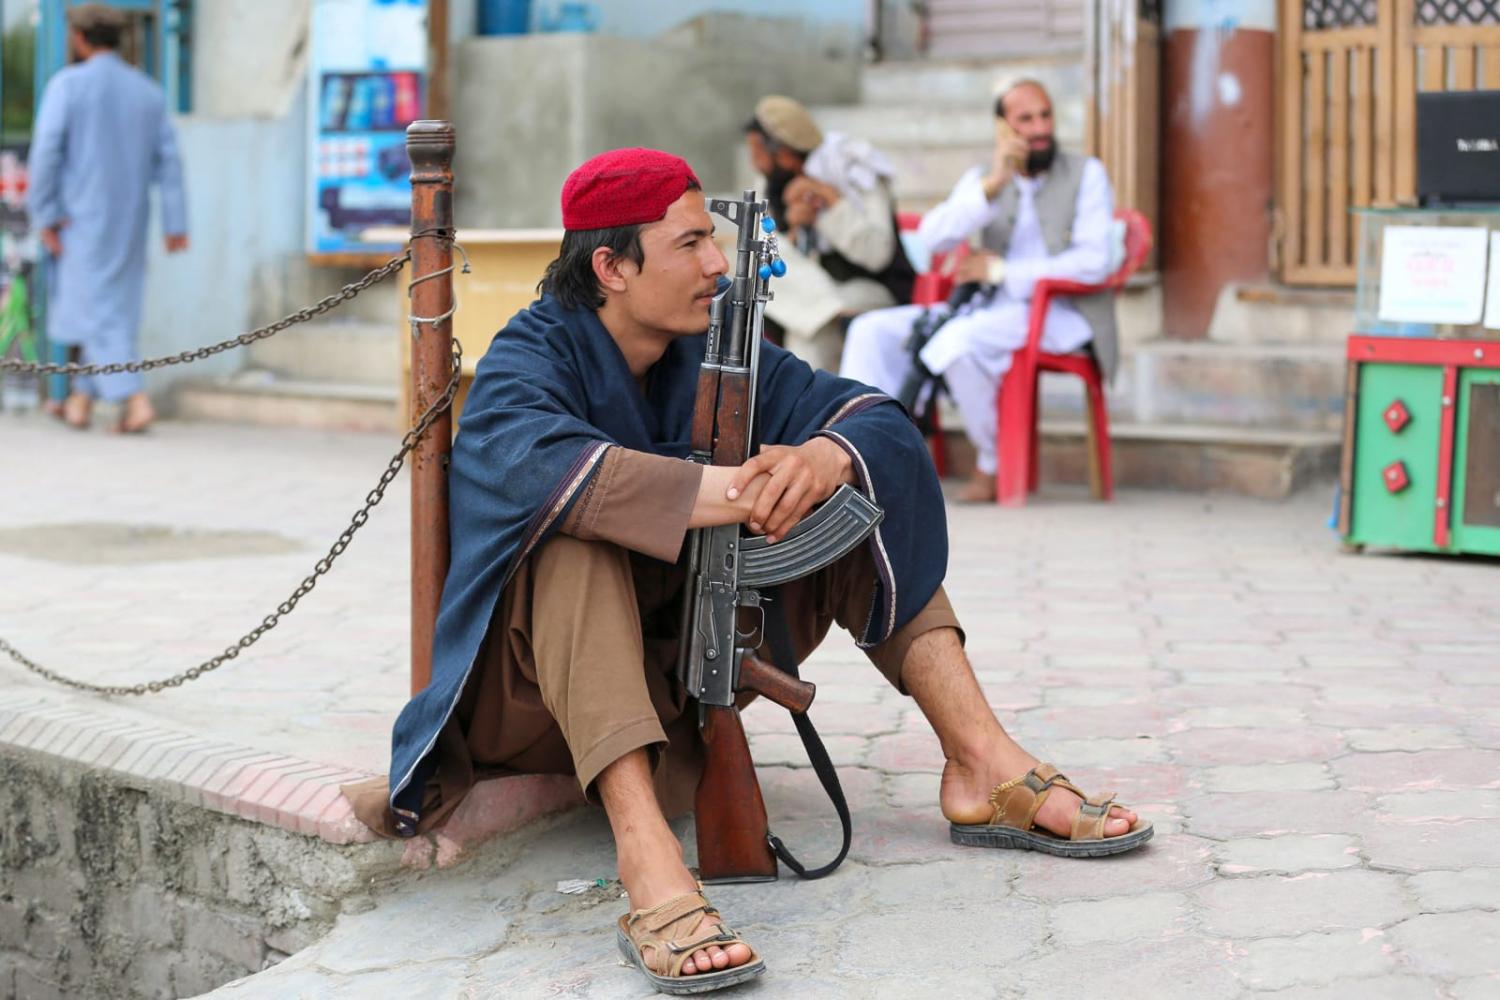 A Taliban guard last month at a market in Jalalabad (Shafiullah Kakar/AFP via Getty Images)